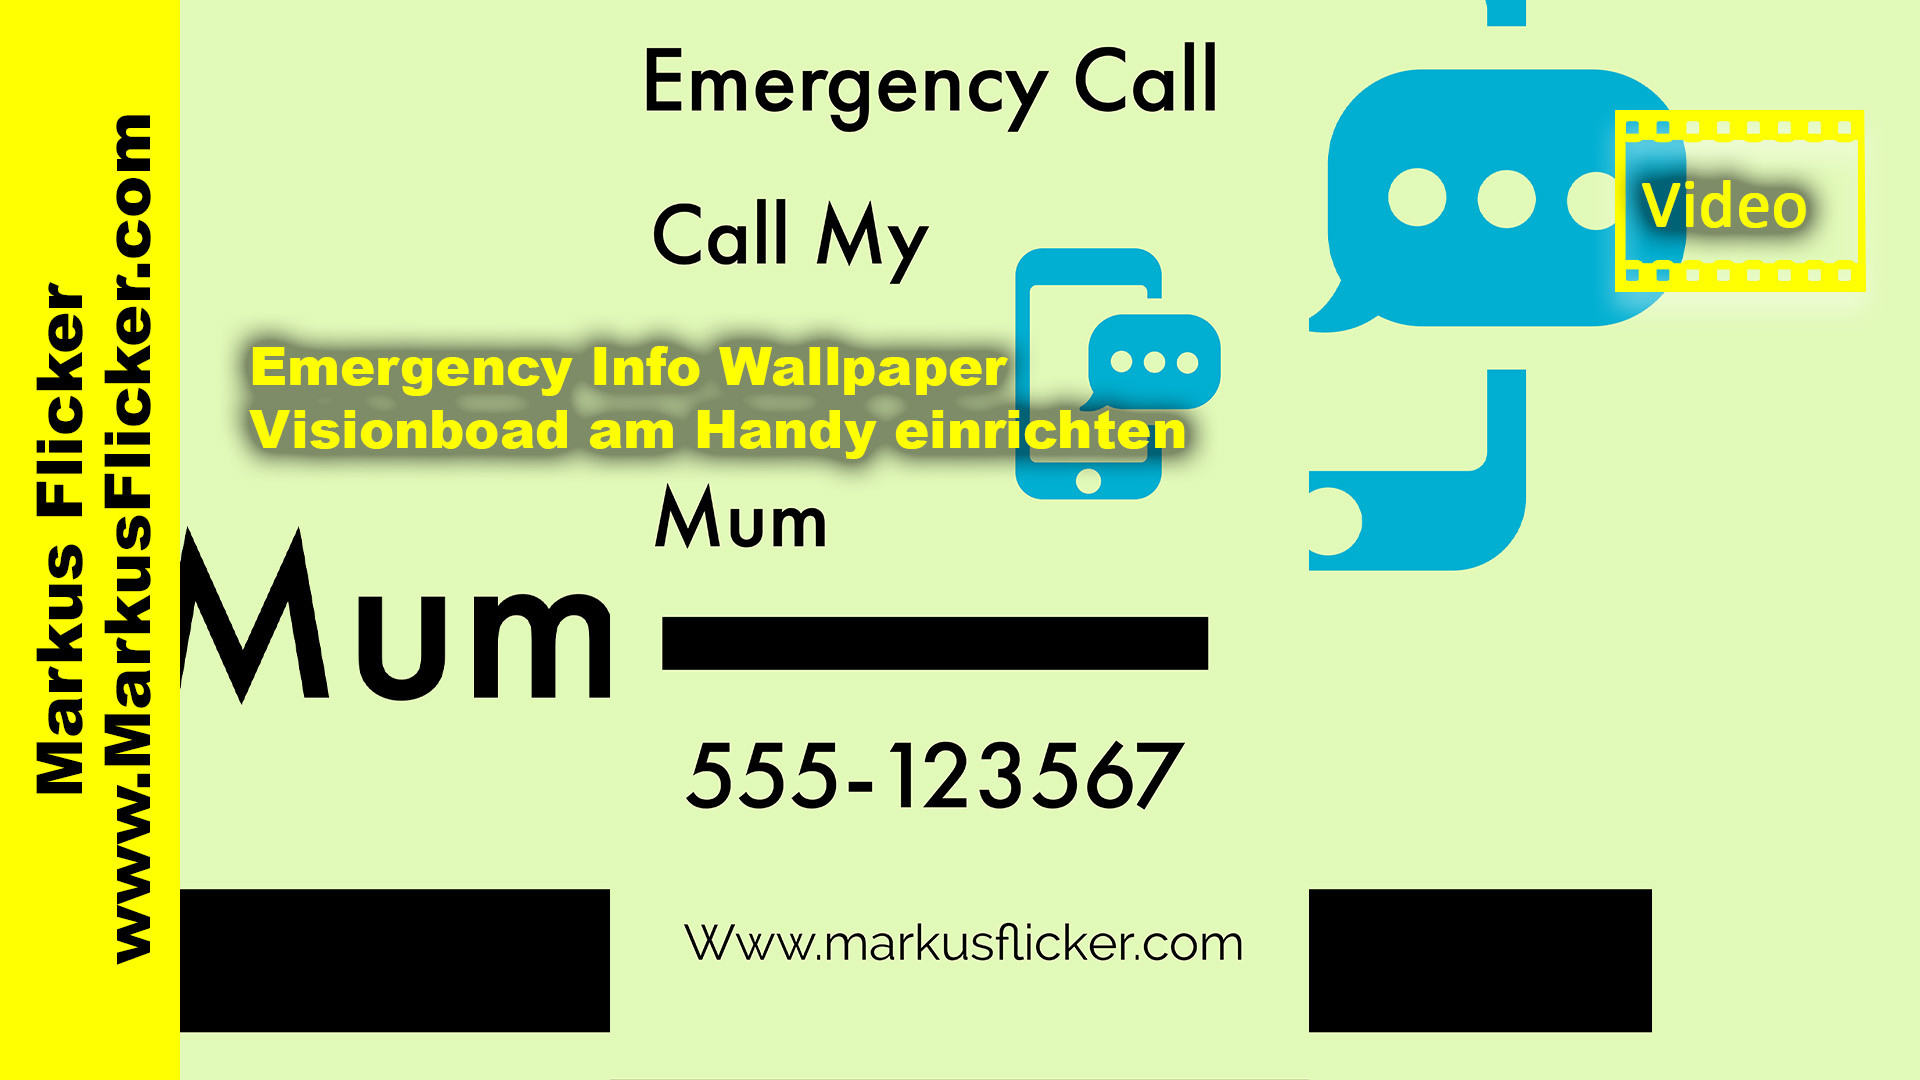 Emergency Info Wallpaper / Visionboard am Handy einrichten